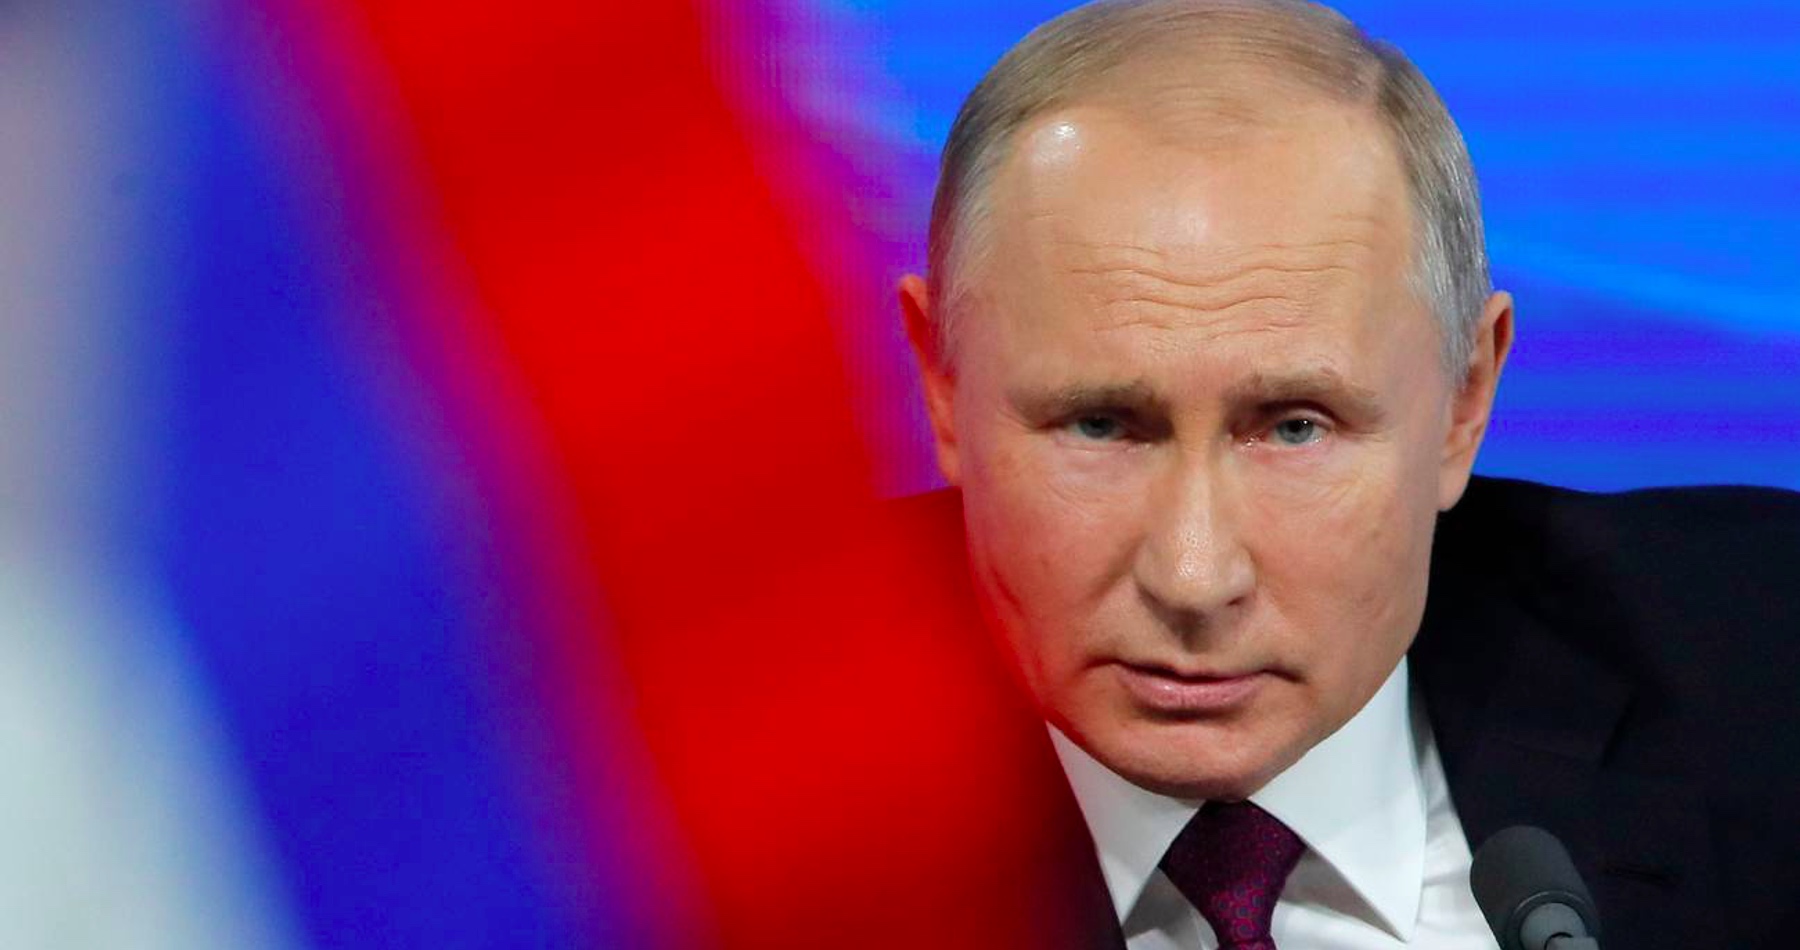 Putin sa vysmial konšpiráciám politikov kolektívneho Západu, že Rusko pripravuje útok proti európskym krajinám. „Potrebujú zdôvodňovať vládne výdavky na vojnu na Ukrajine,“ vysvetlil ruský prezident strašenie občanov Európy